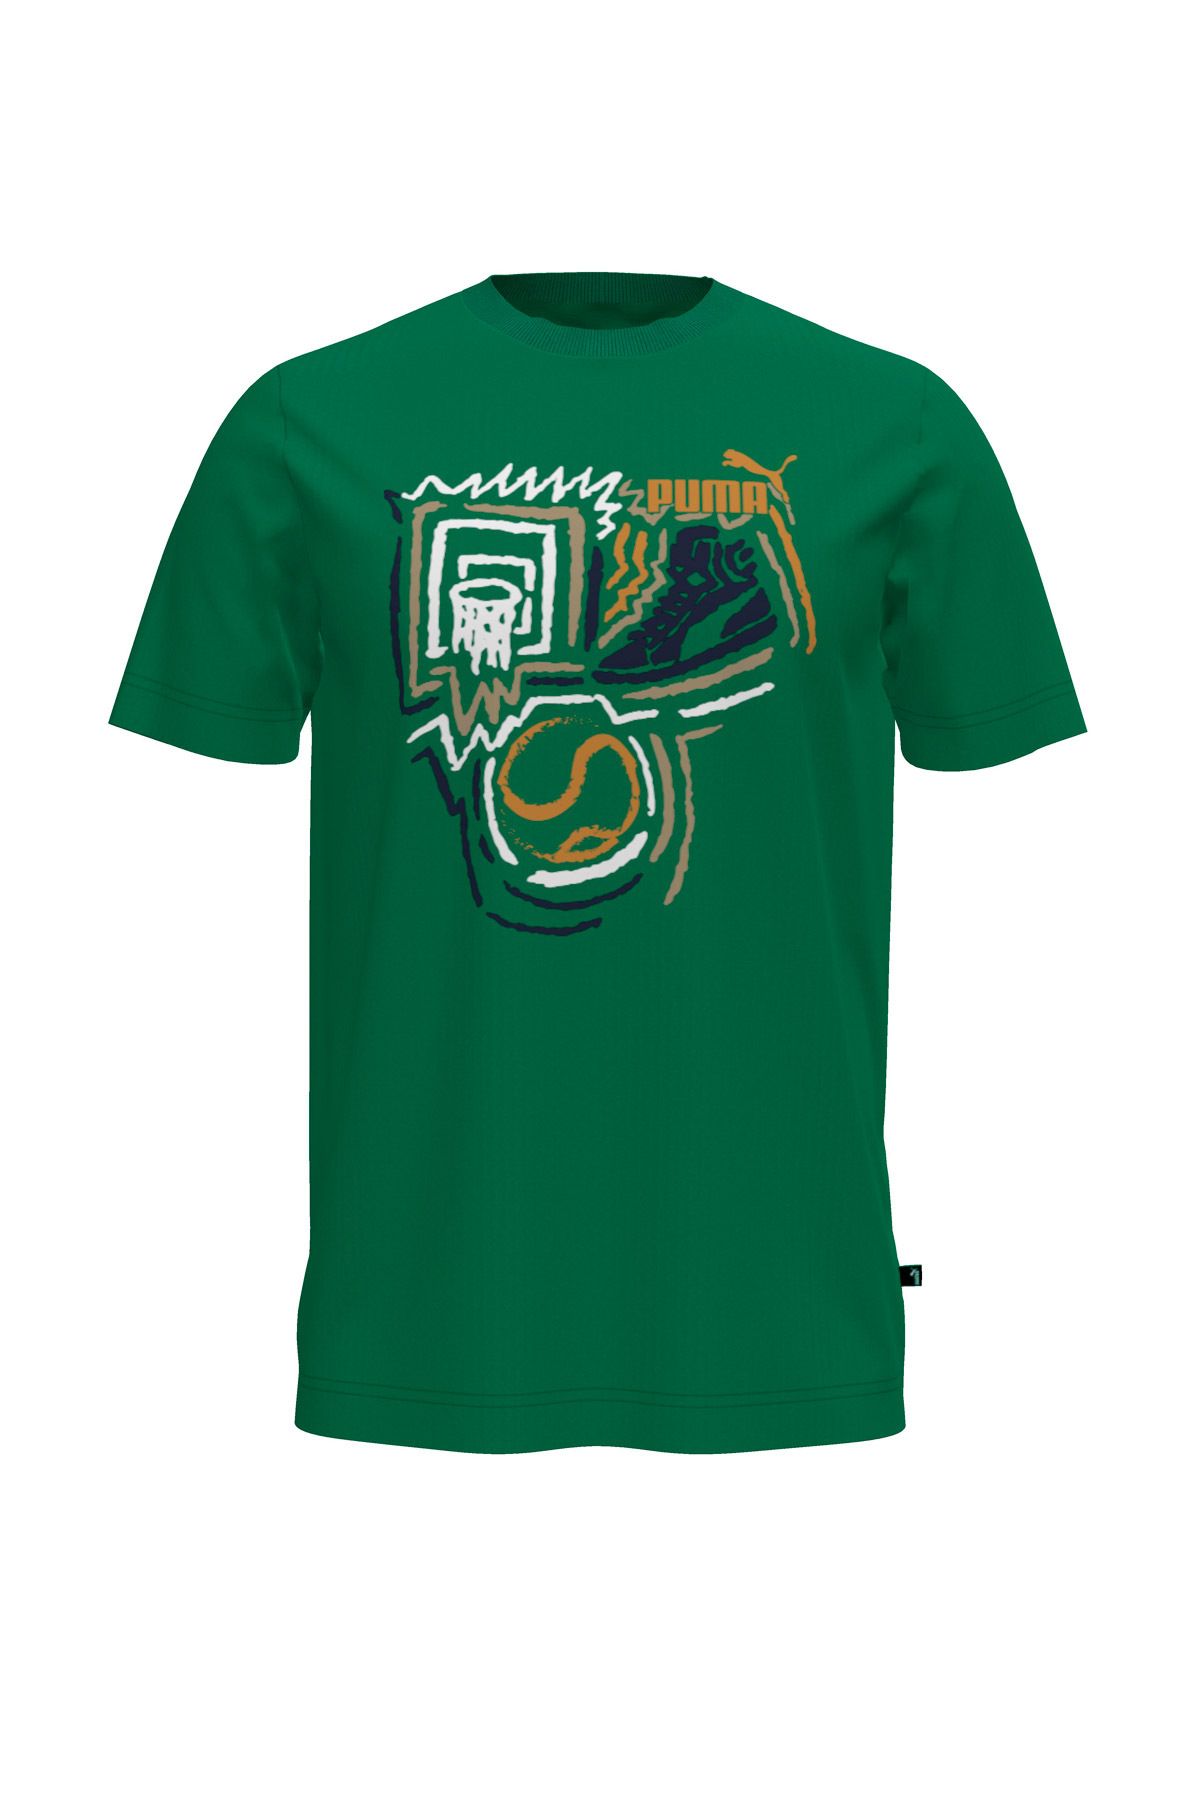 Puma GRAPHICS Year of Sports Yeşil Erkek Kısa Kol T-Shirt